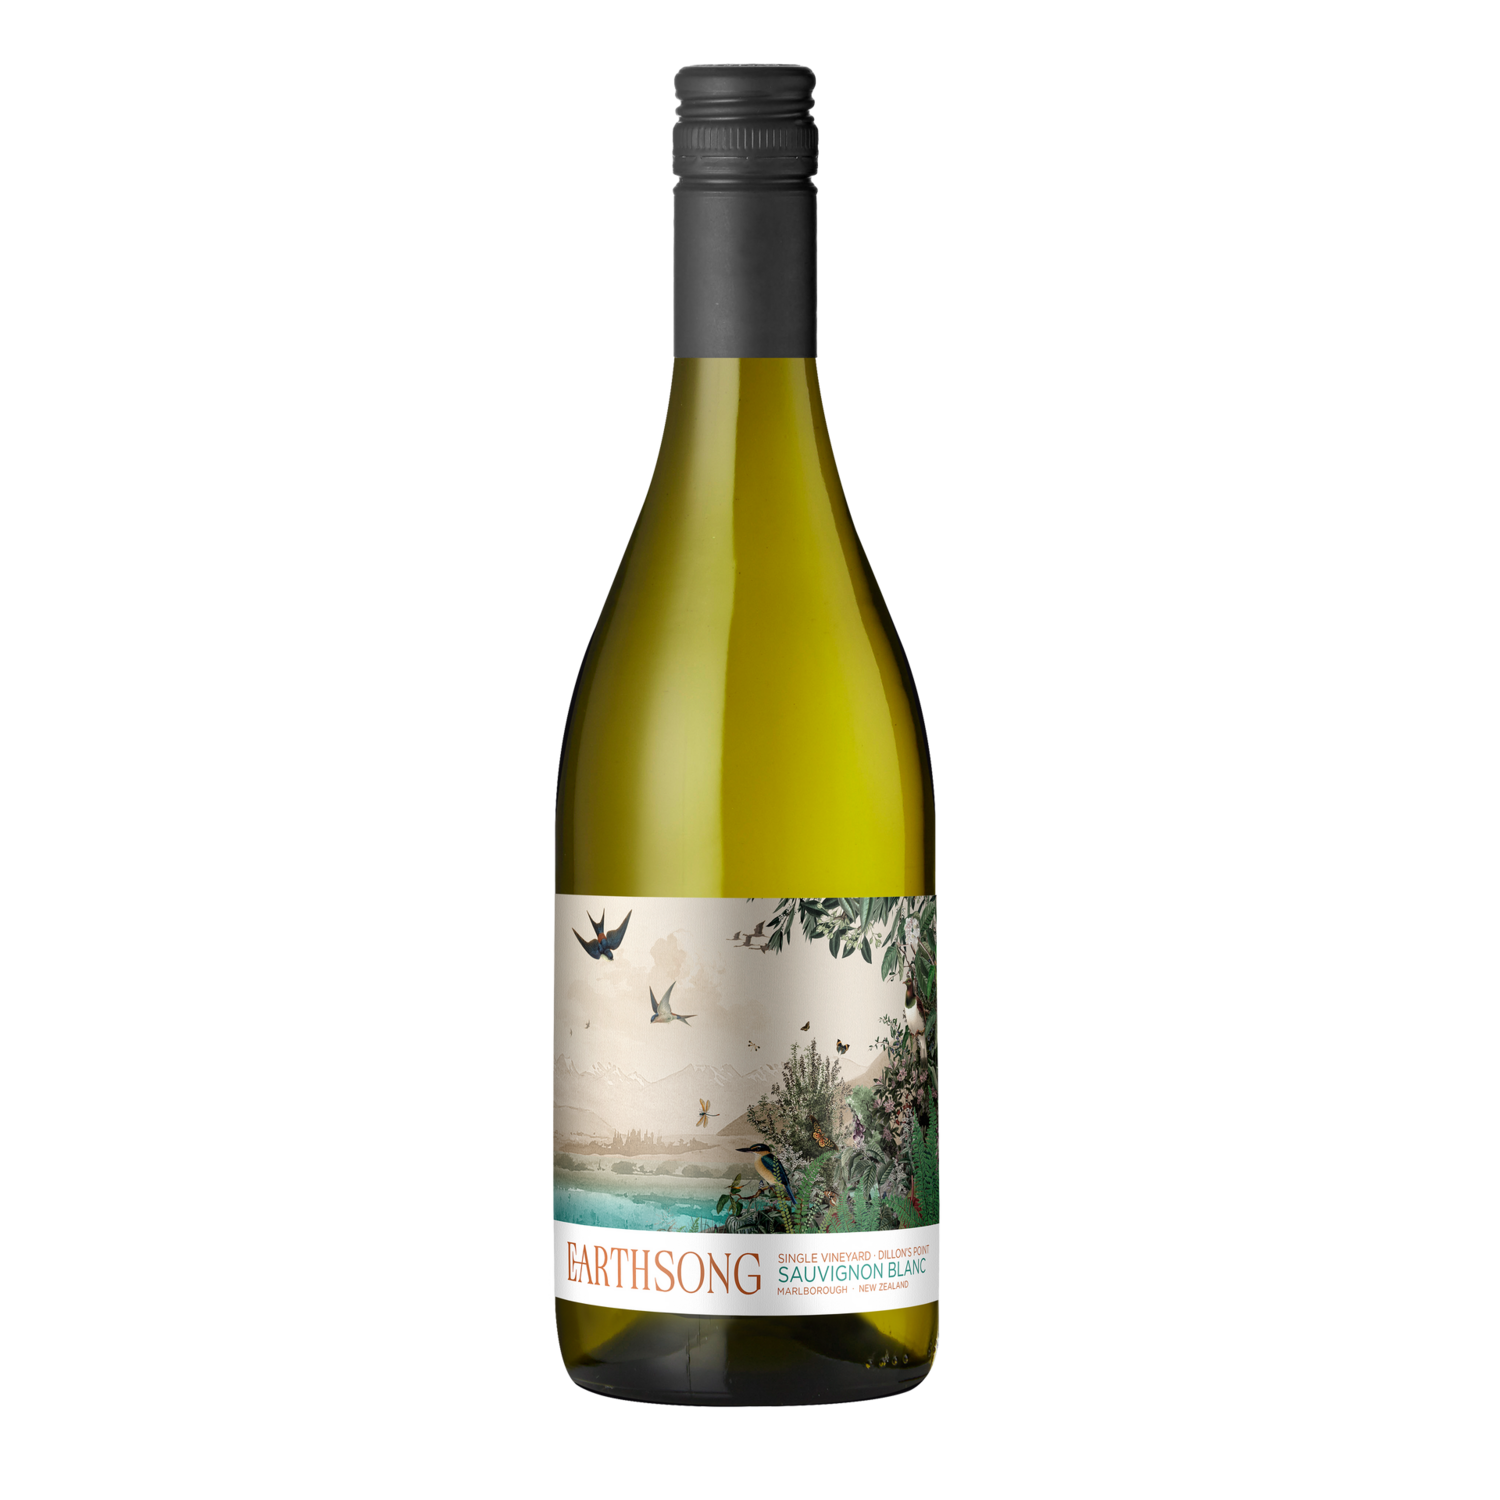 Earthsong Single Vineyard Sauvignon Blanc 2022